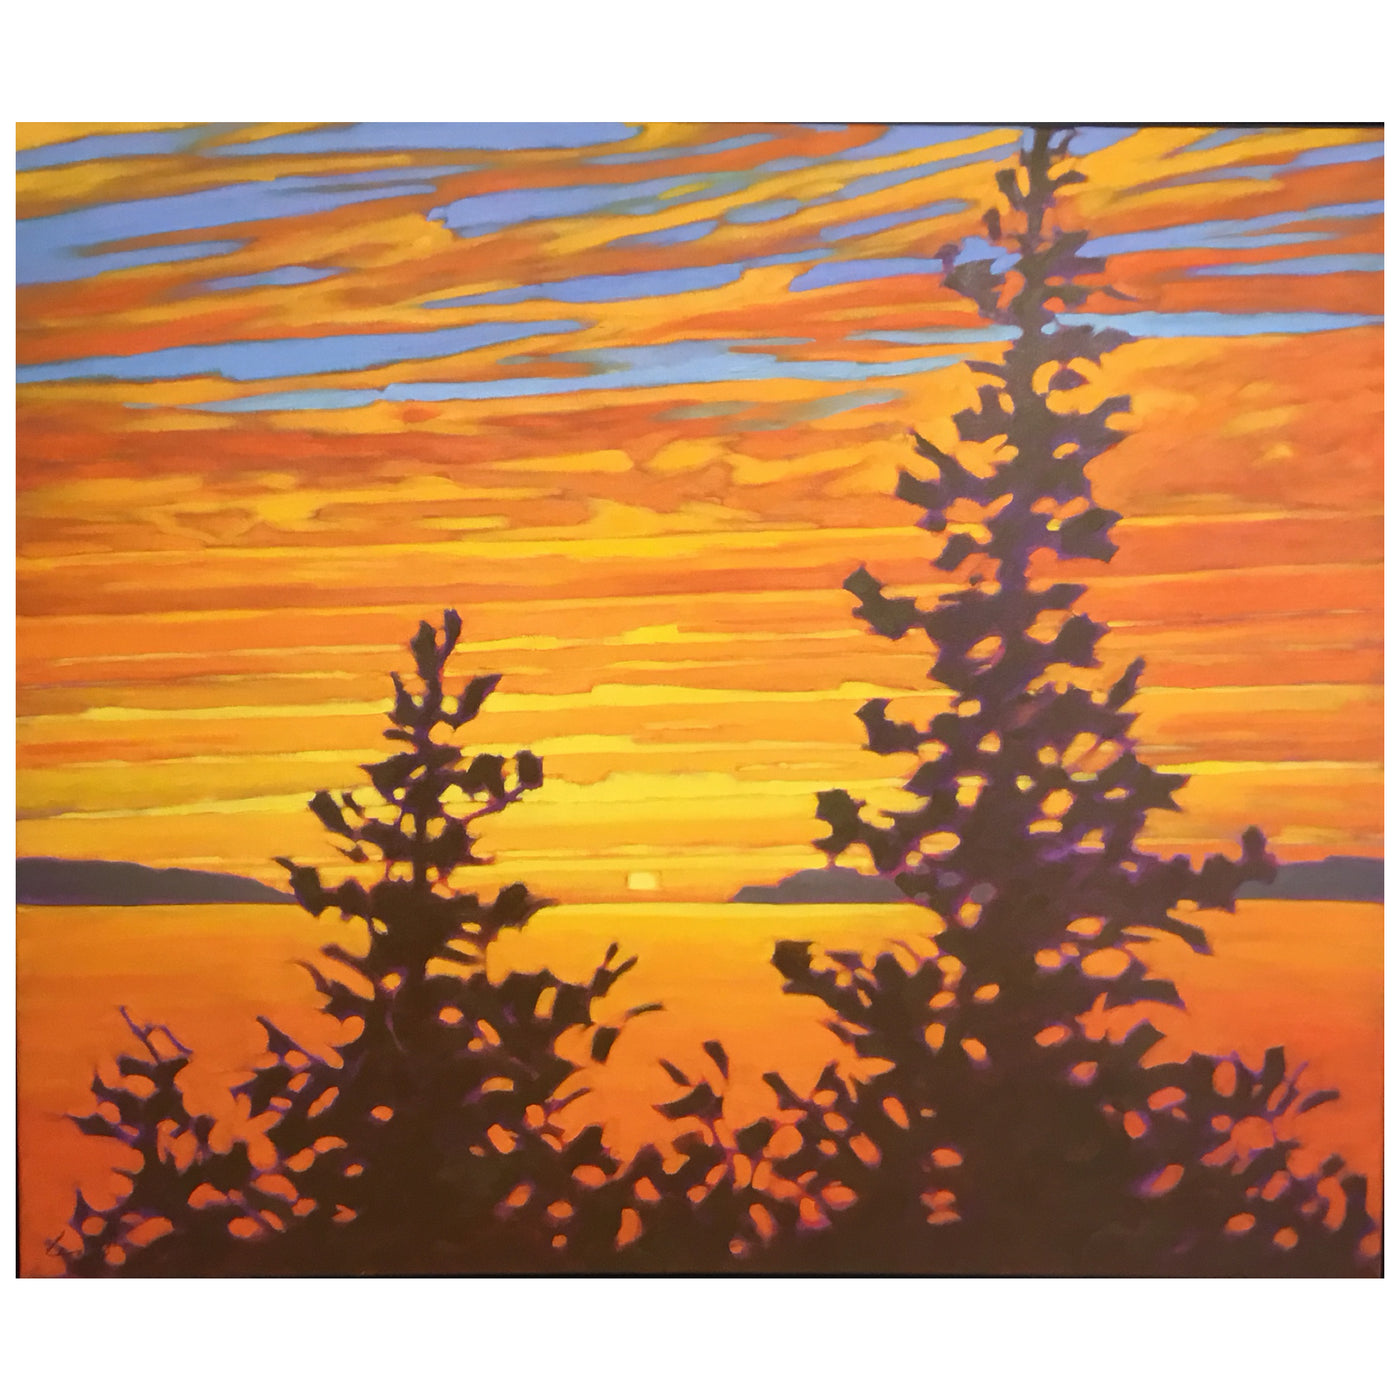 Golden Sunset - John Lennard-Painting-Eclipse Art Gallery